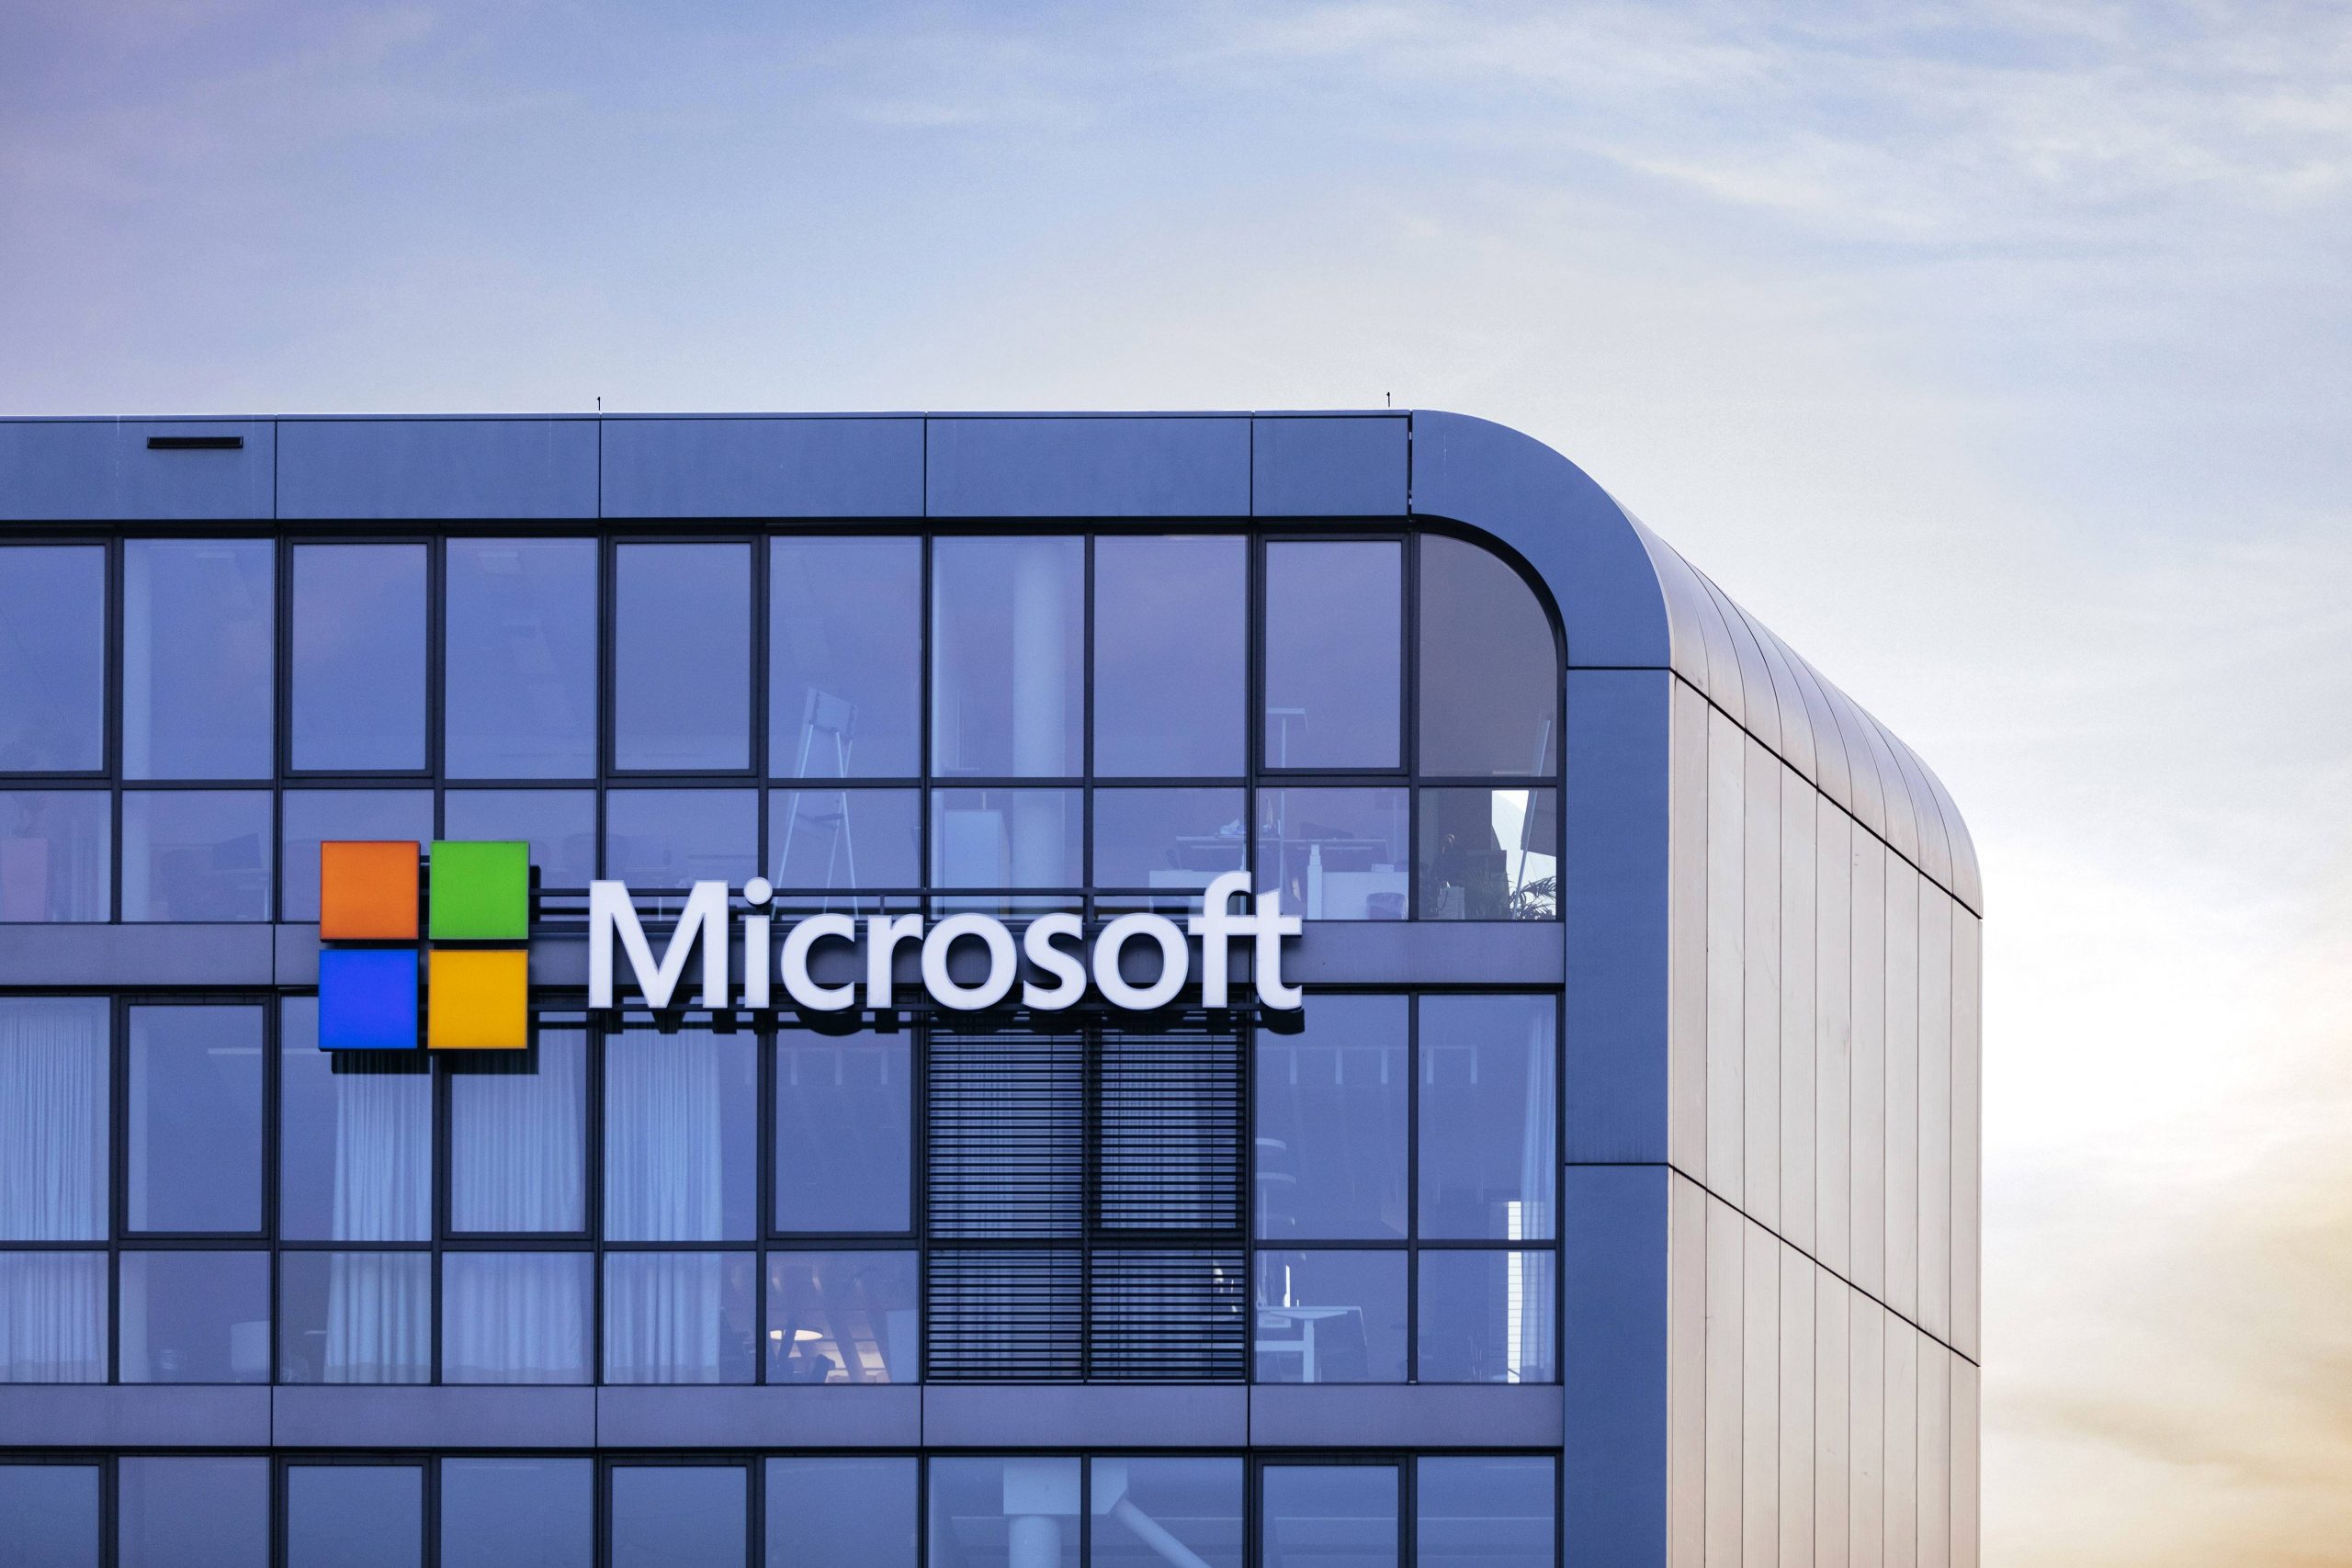 Сторонняя юридическая фирма изучит Microsoft на предмет сексуальных домогательств